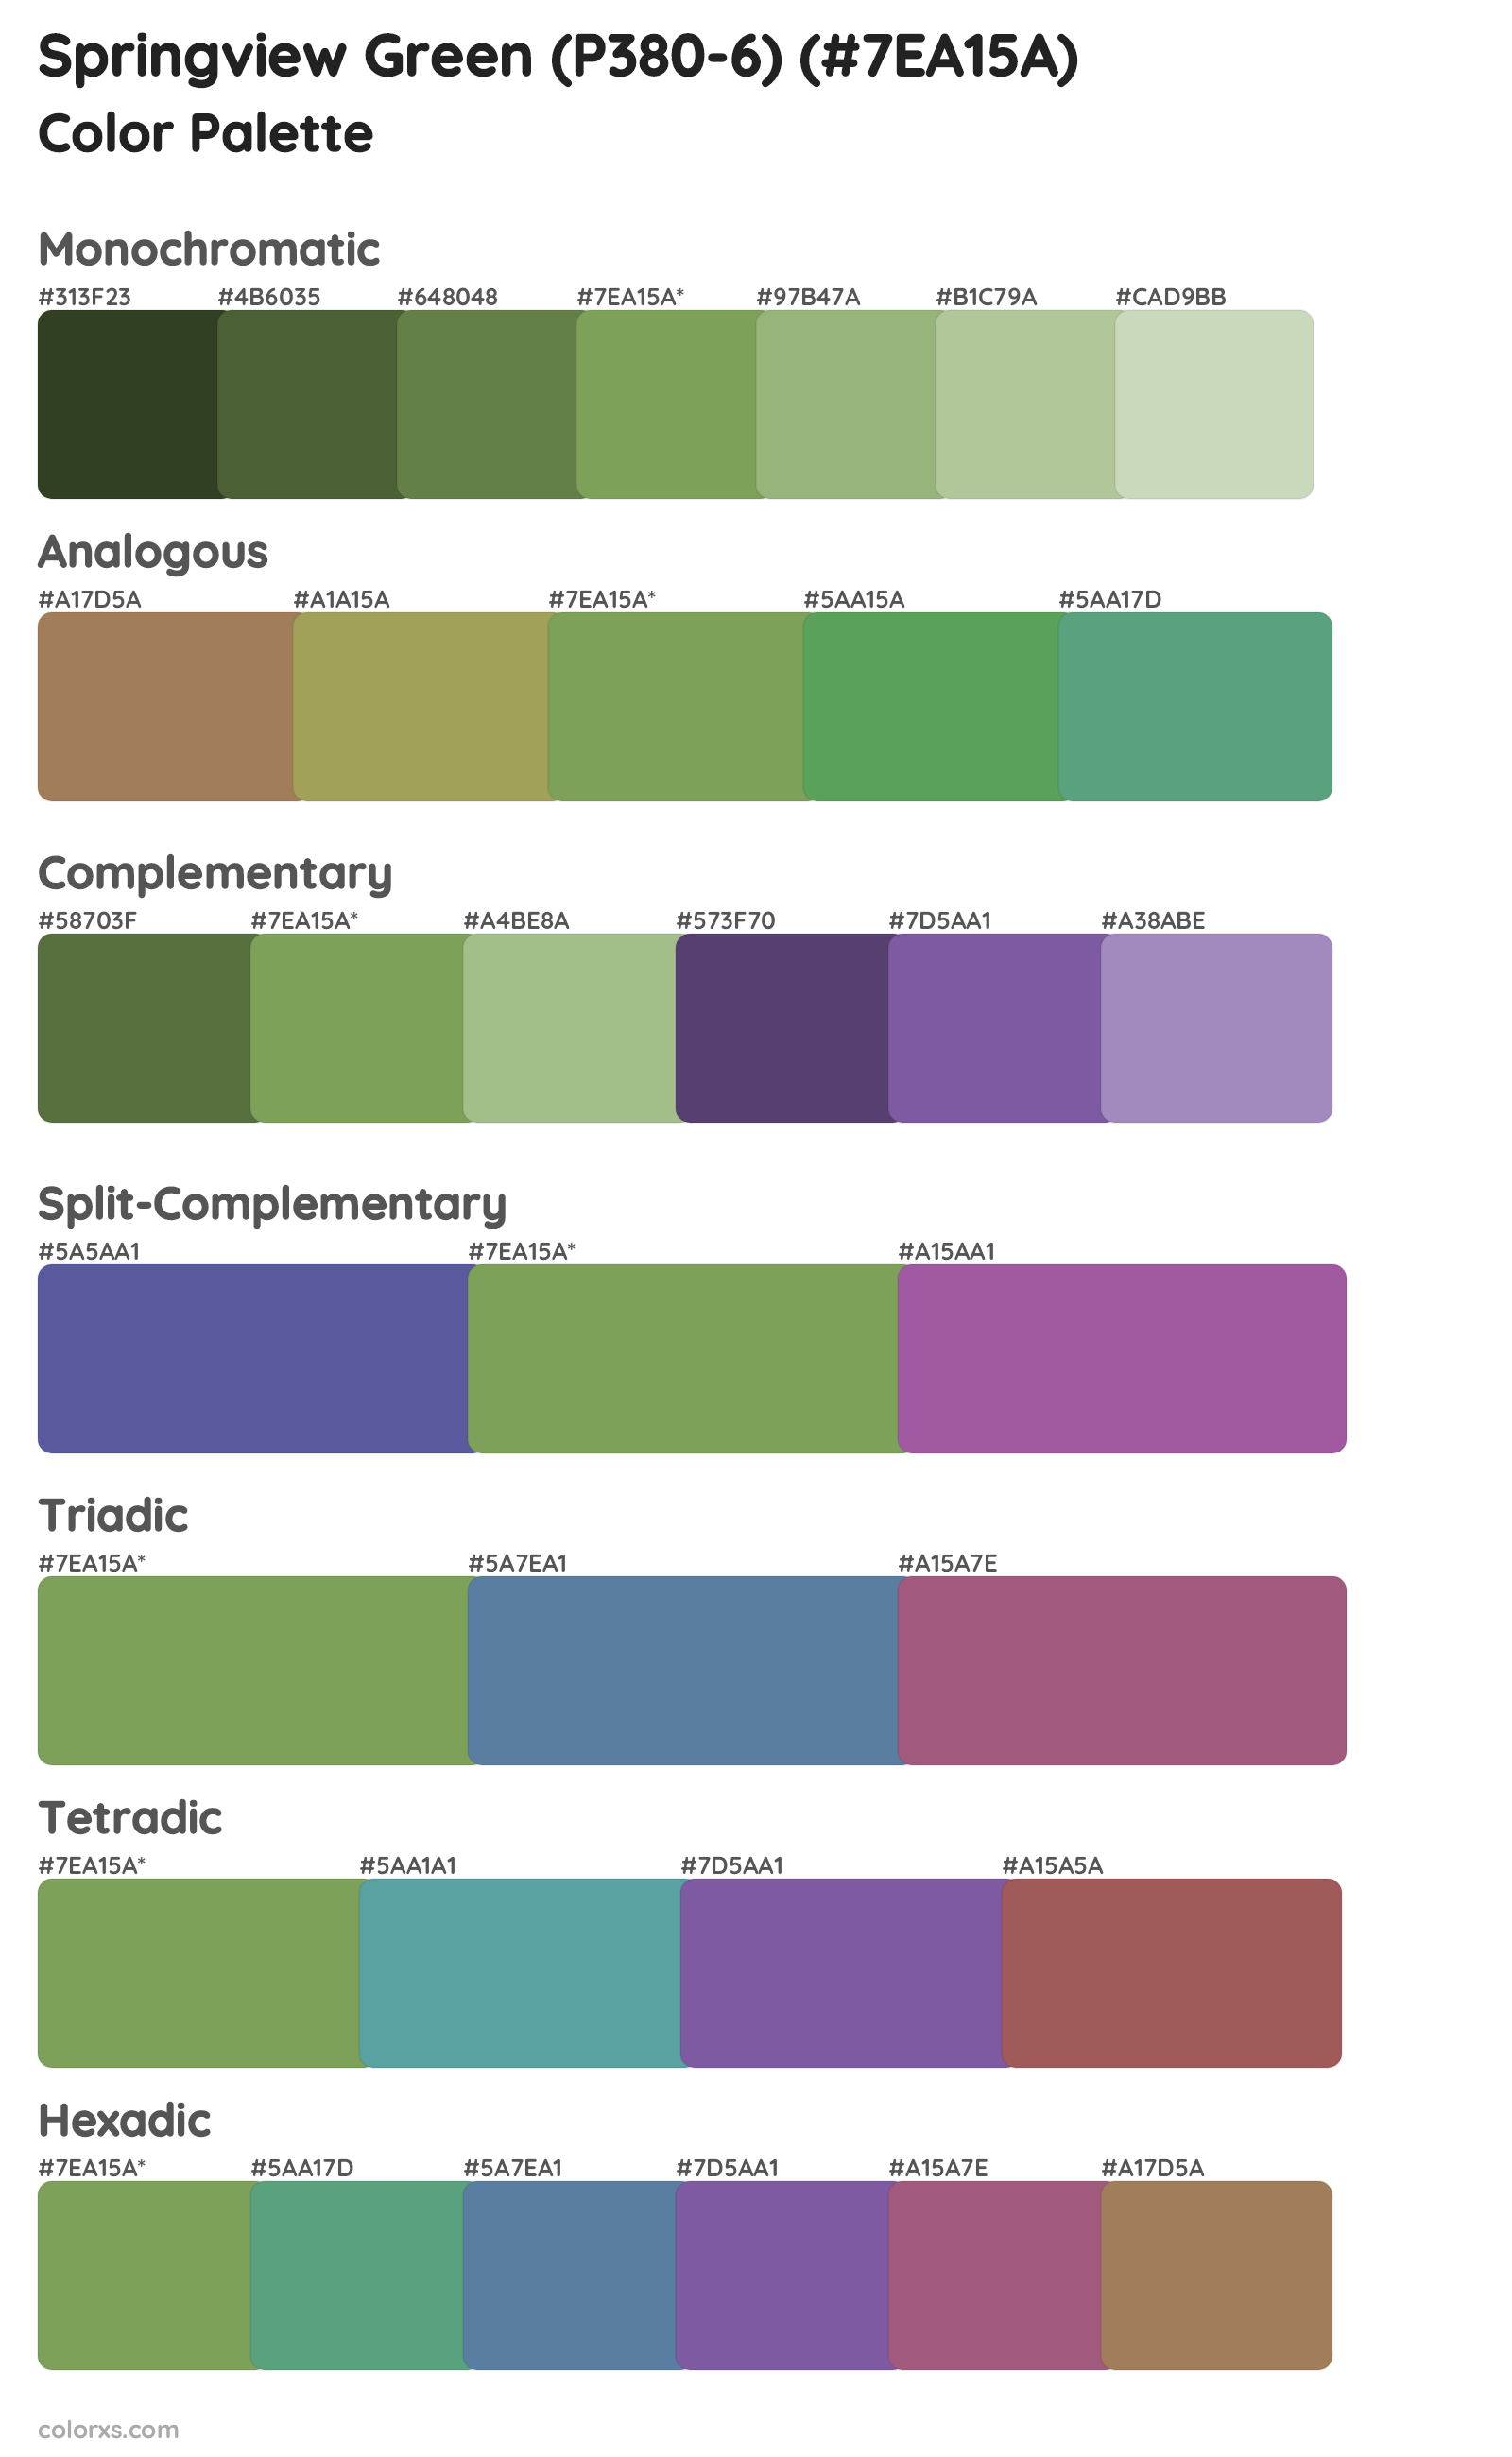 Springview Green (P380-6) Color Scheme Palettes